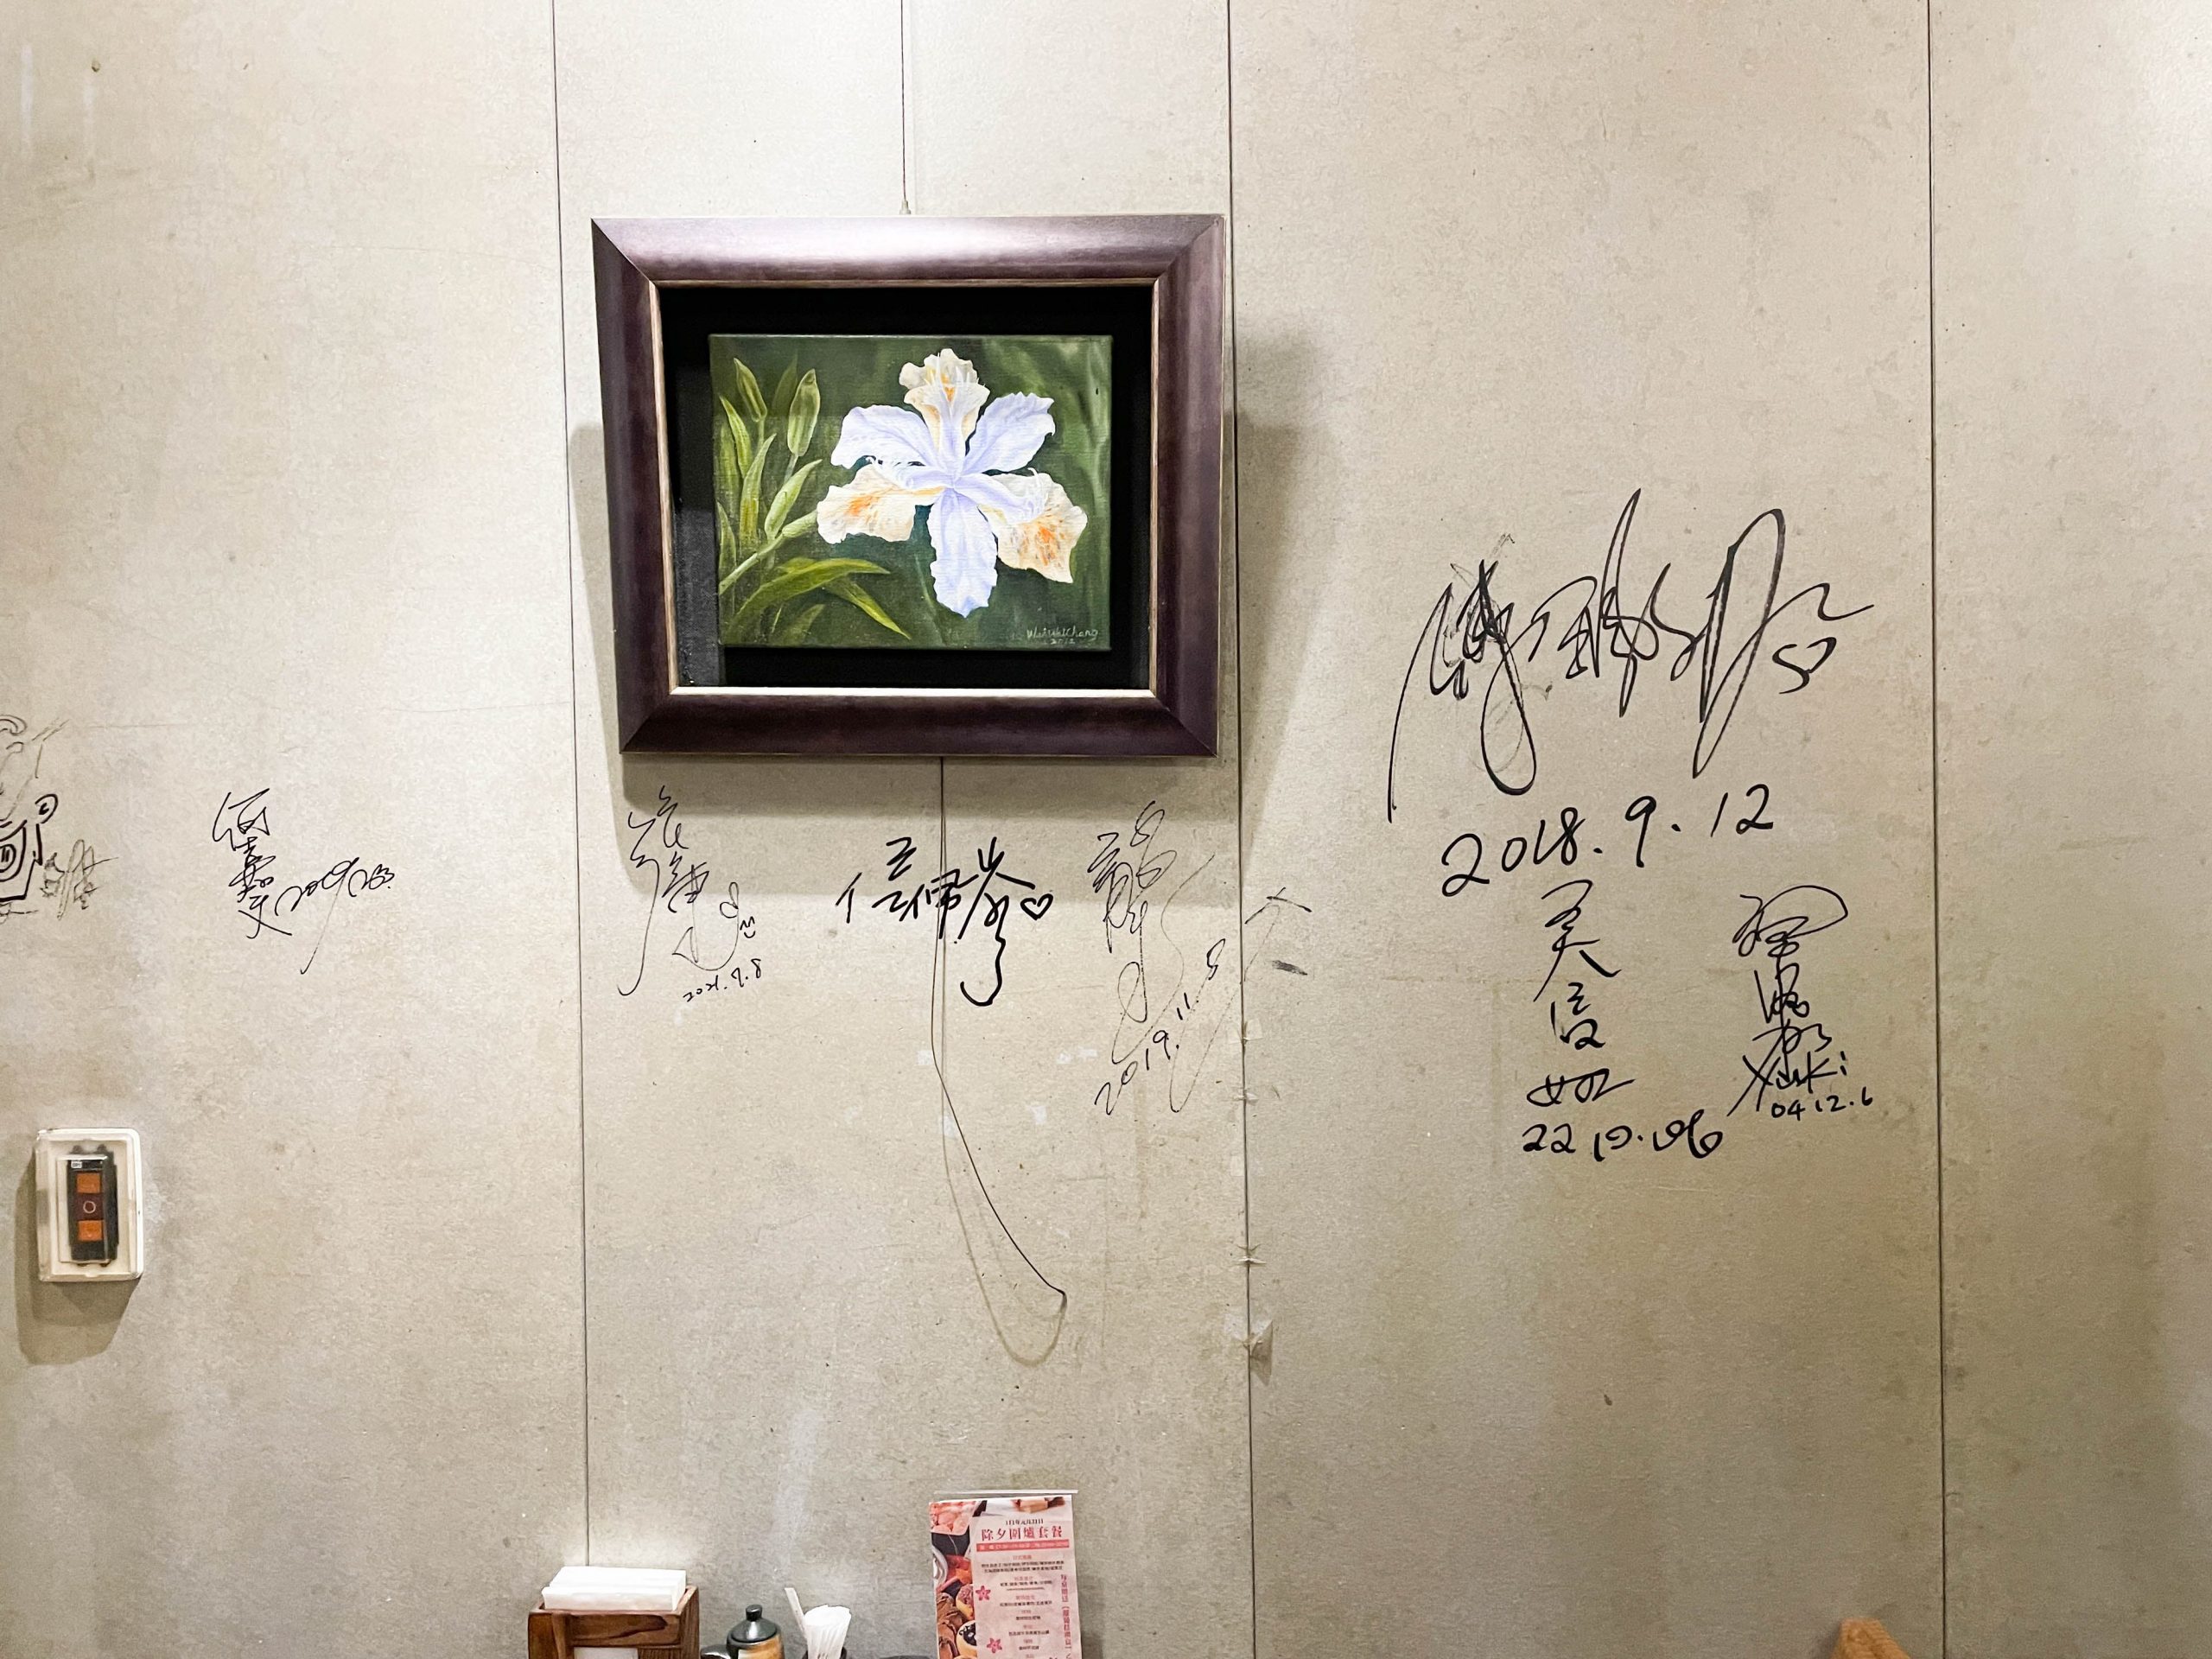 牆上有不少藝人或是名人的簽名就知道這間店的人氣程度